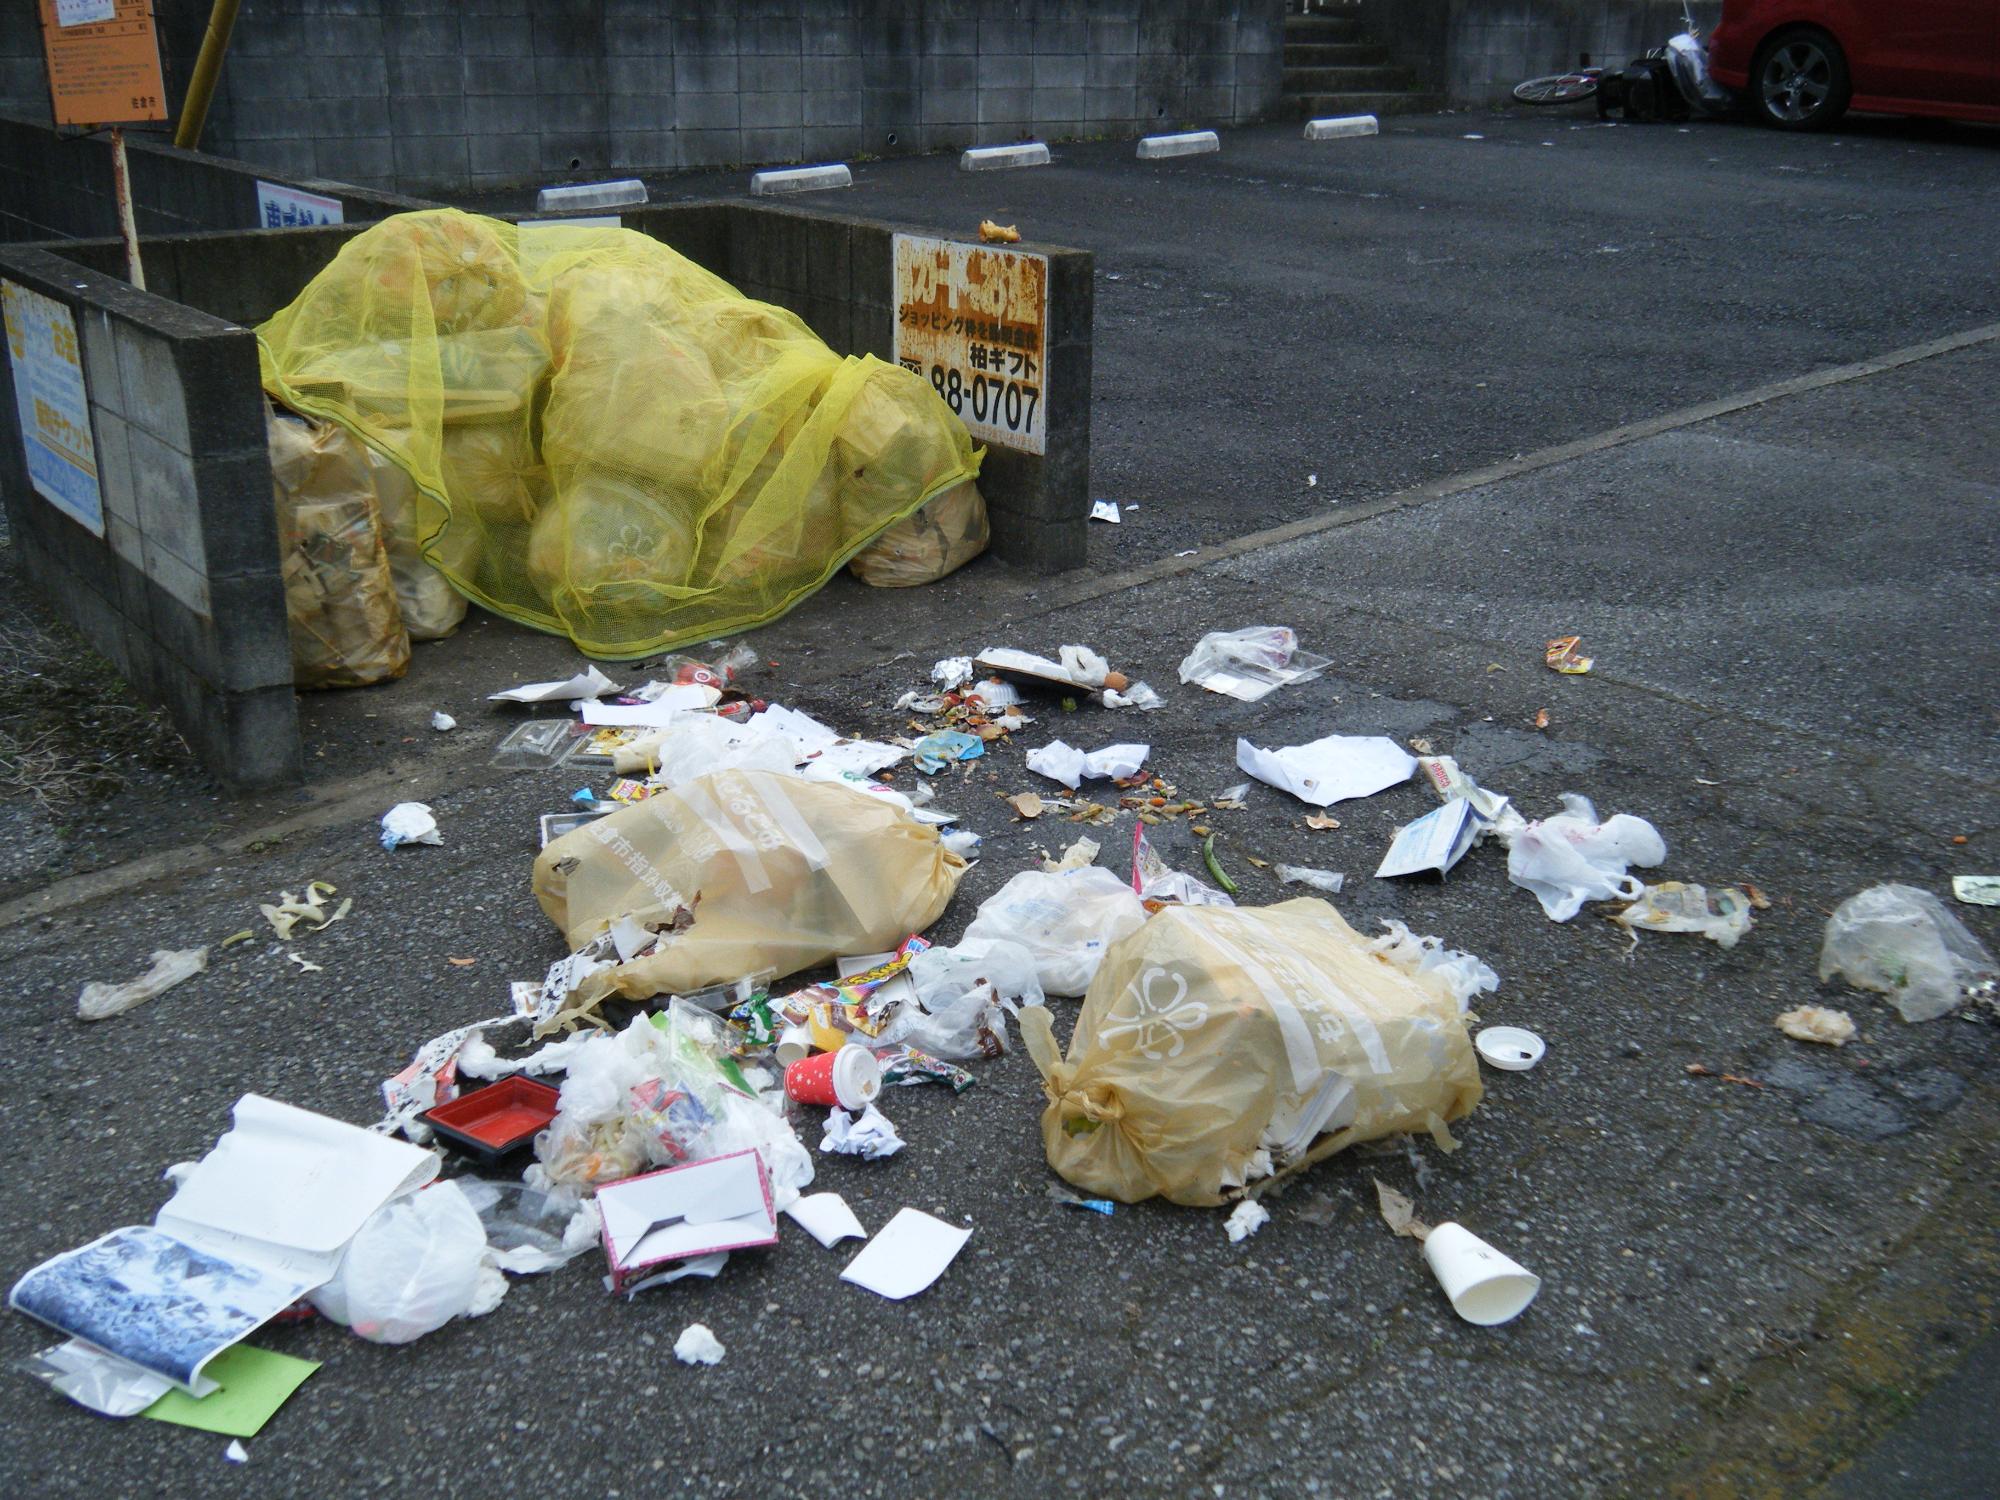 ごみの集積所のネットがかけられたごみ袋と、集積所の前の道路に散乱しているゴミの写真